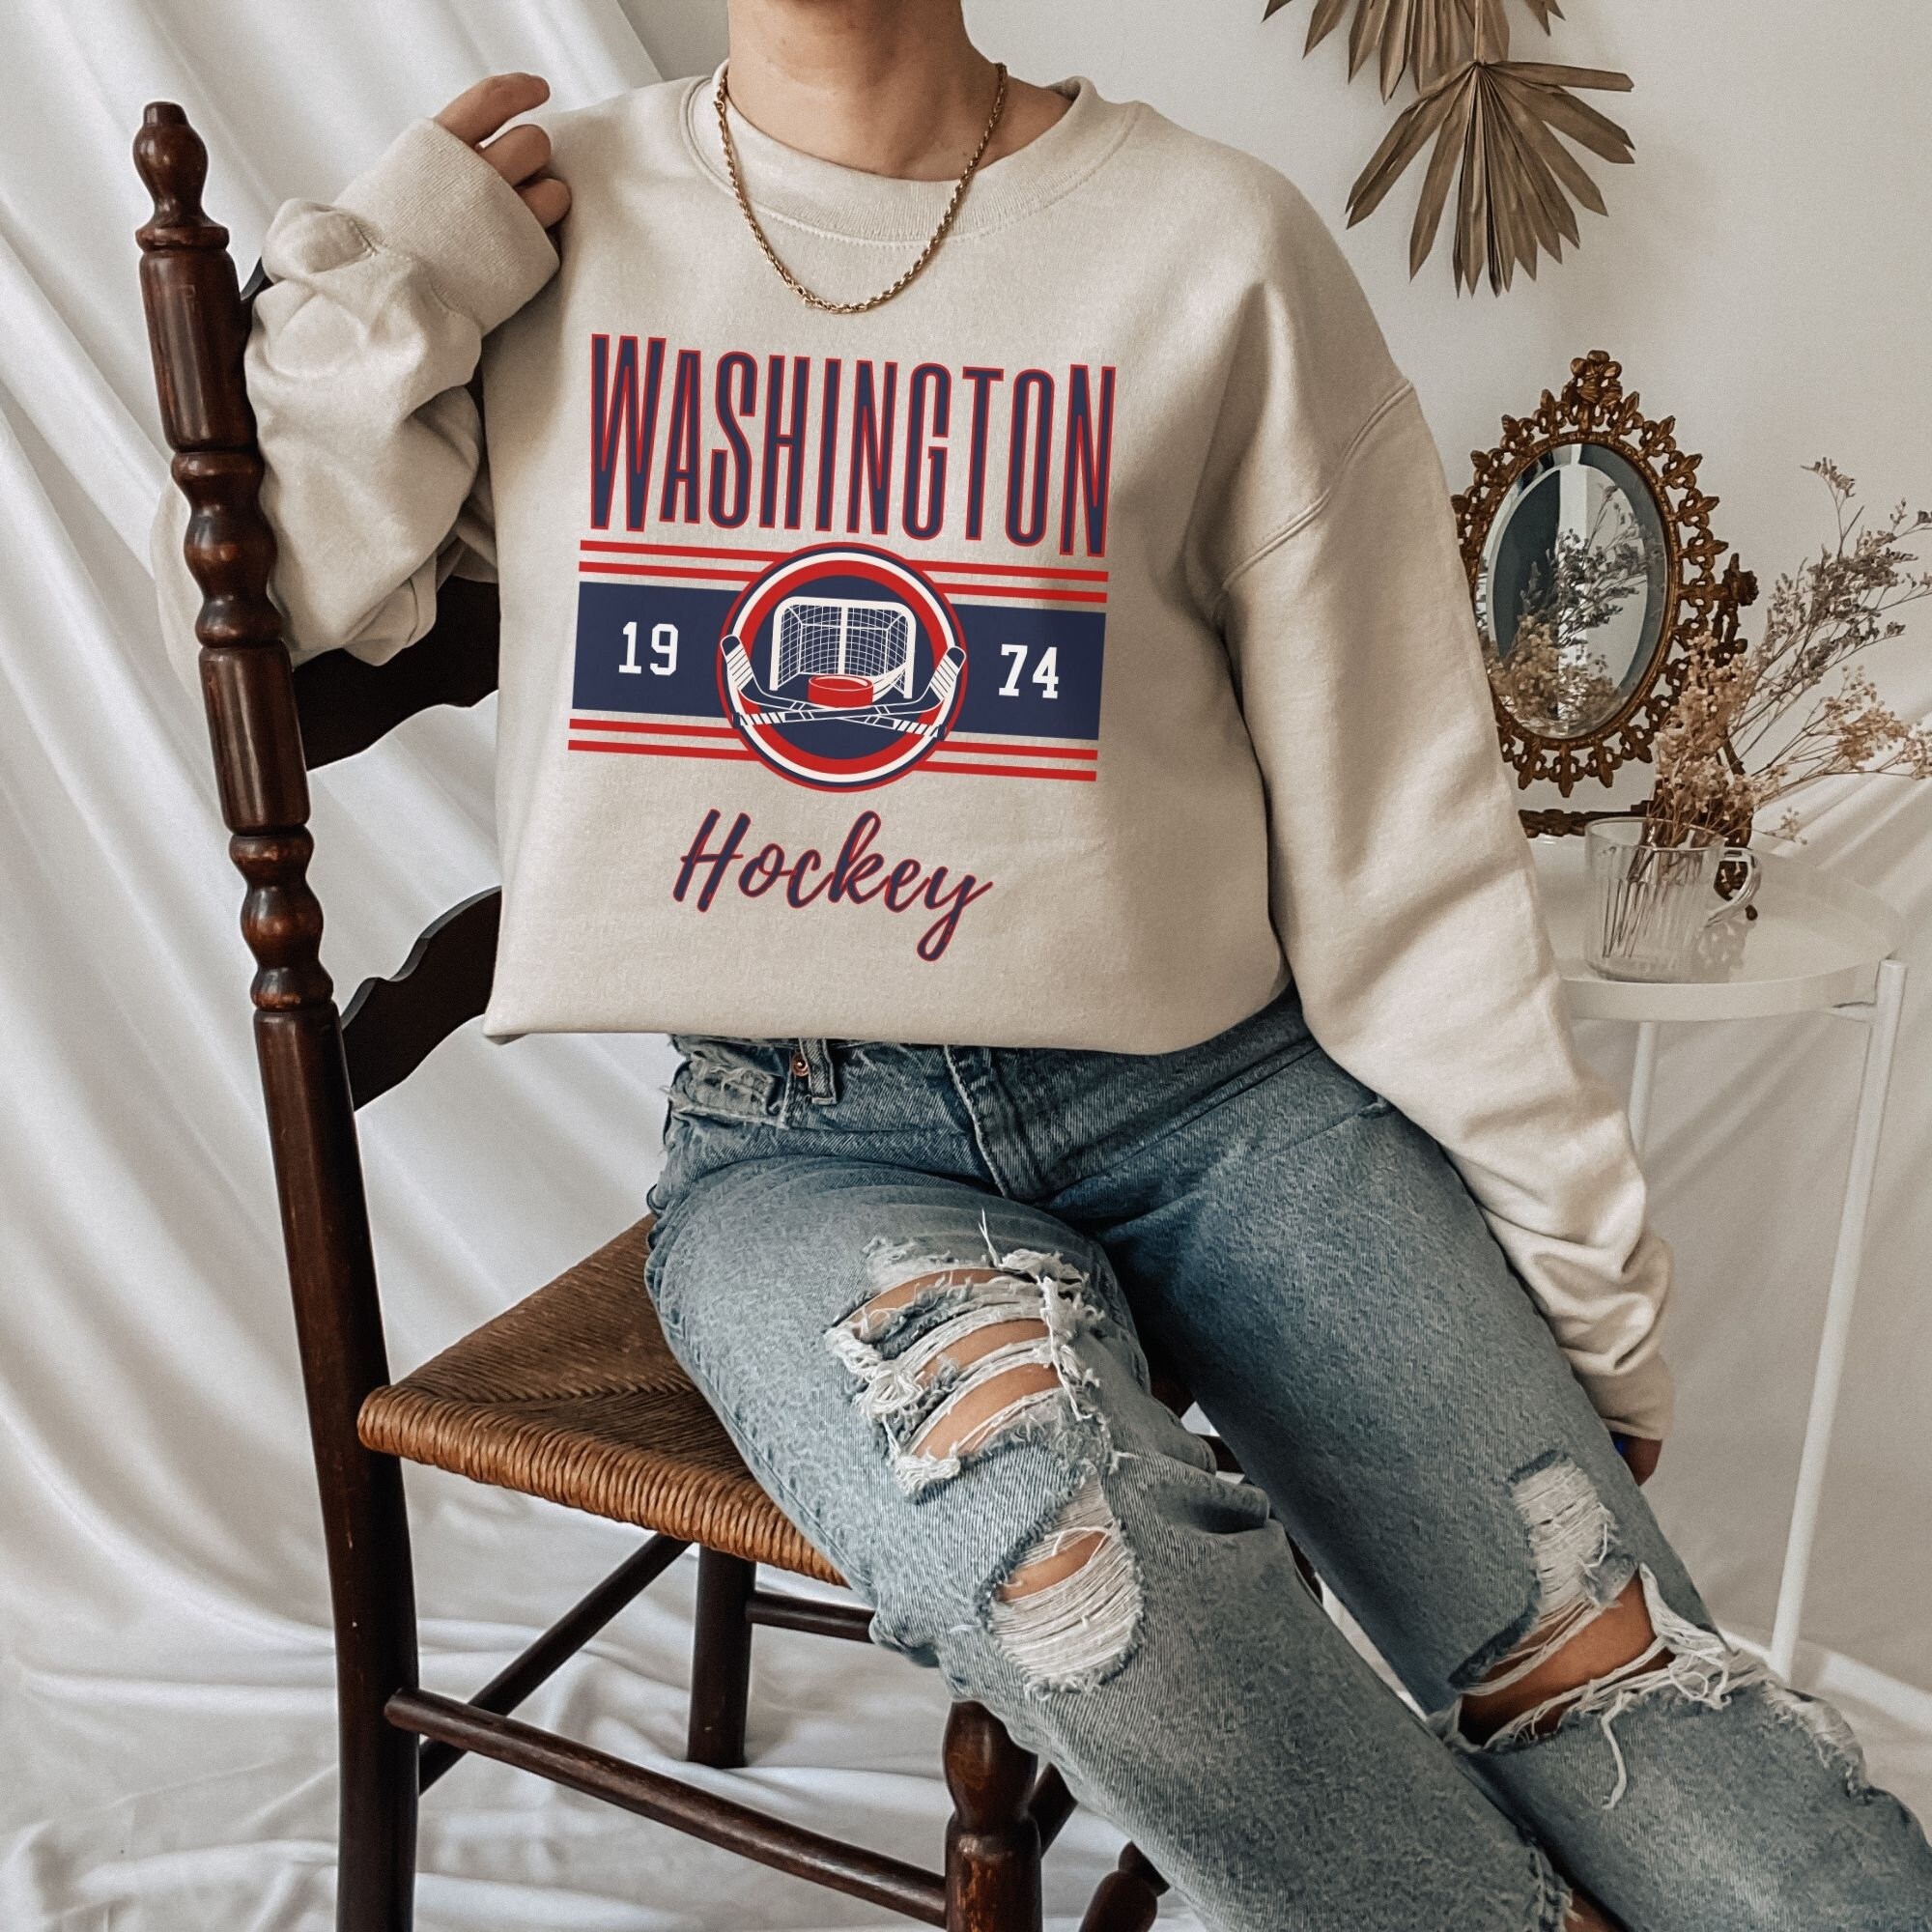 Vintage Style Washington DC Hockey Sweatshirt, DC Hockey Sweatshirt, Retro  DC Hockey Crewneck, Cute Washington Hockey Sweatshirt, Hockey T